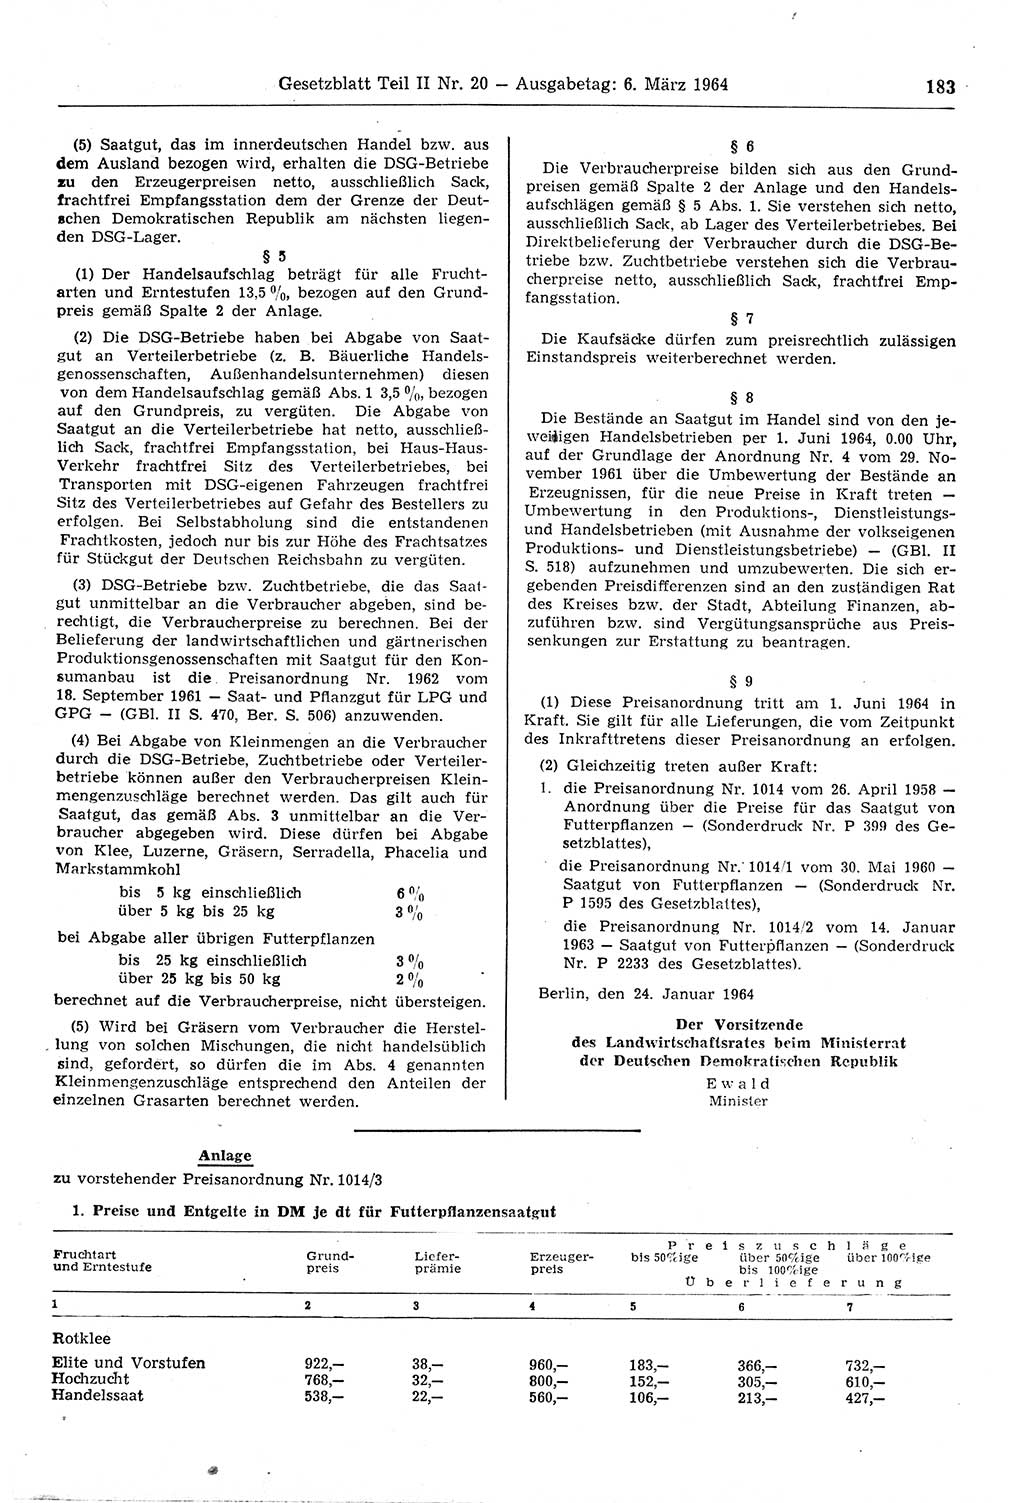 Gesetzblatt (GBl.) der Deutschen Demokratischen Republik (DDR) Teil ⅠⅠ 1964, Seite 183 (GBl. DDR ⅠⅠ 1964, S. 183)